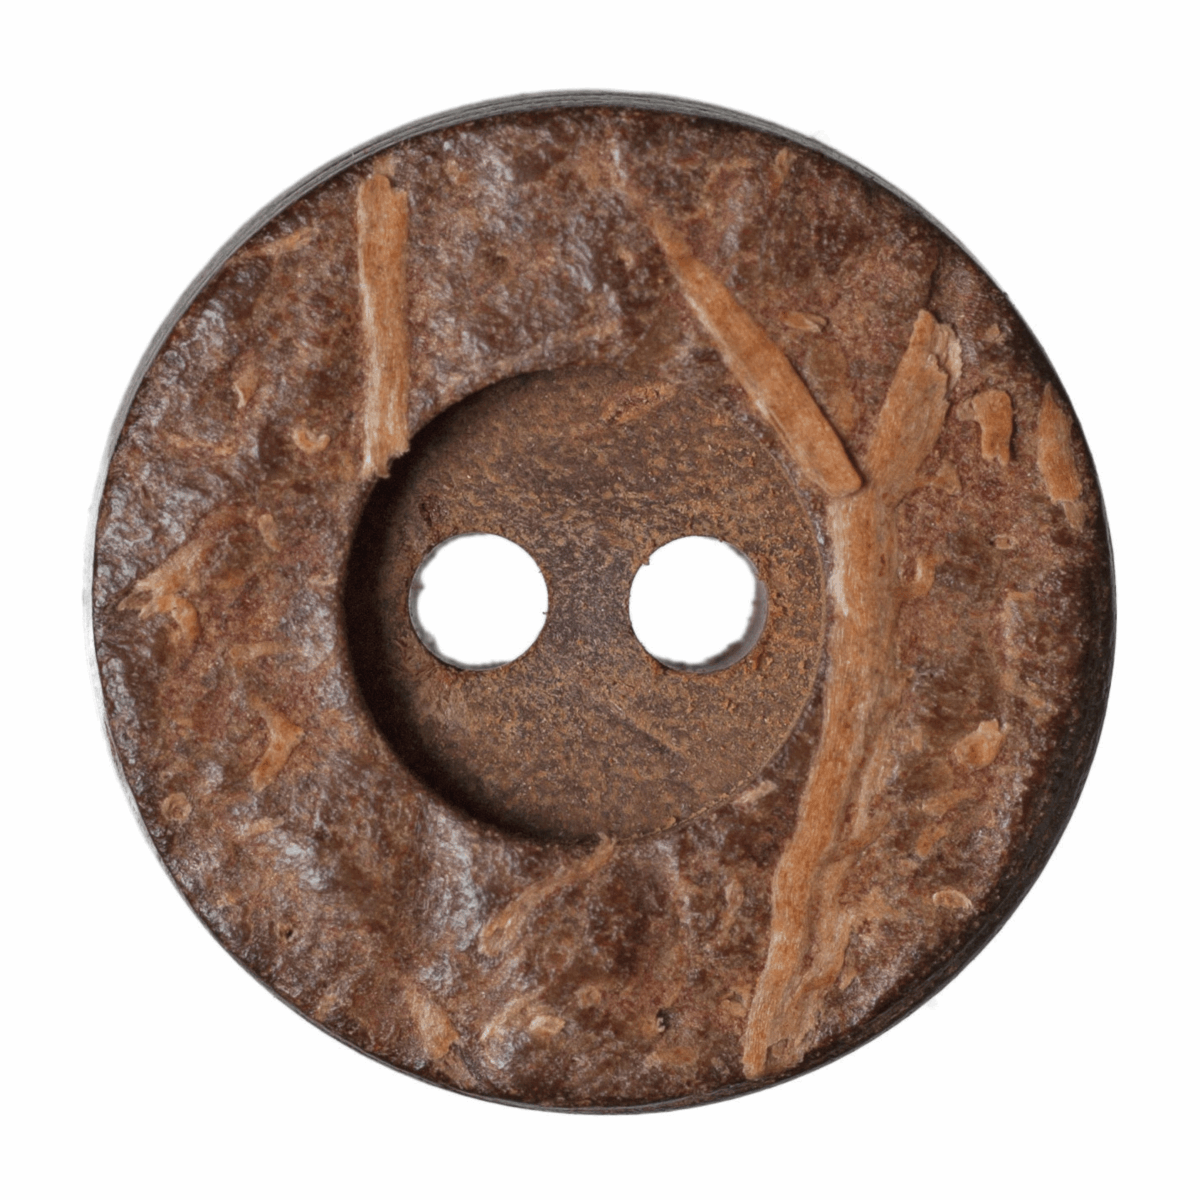 Hemline Round Wooden Button - 15mm (Pack of 7)